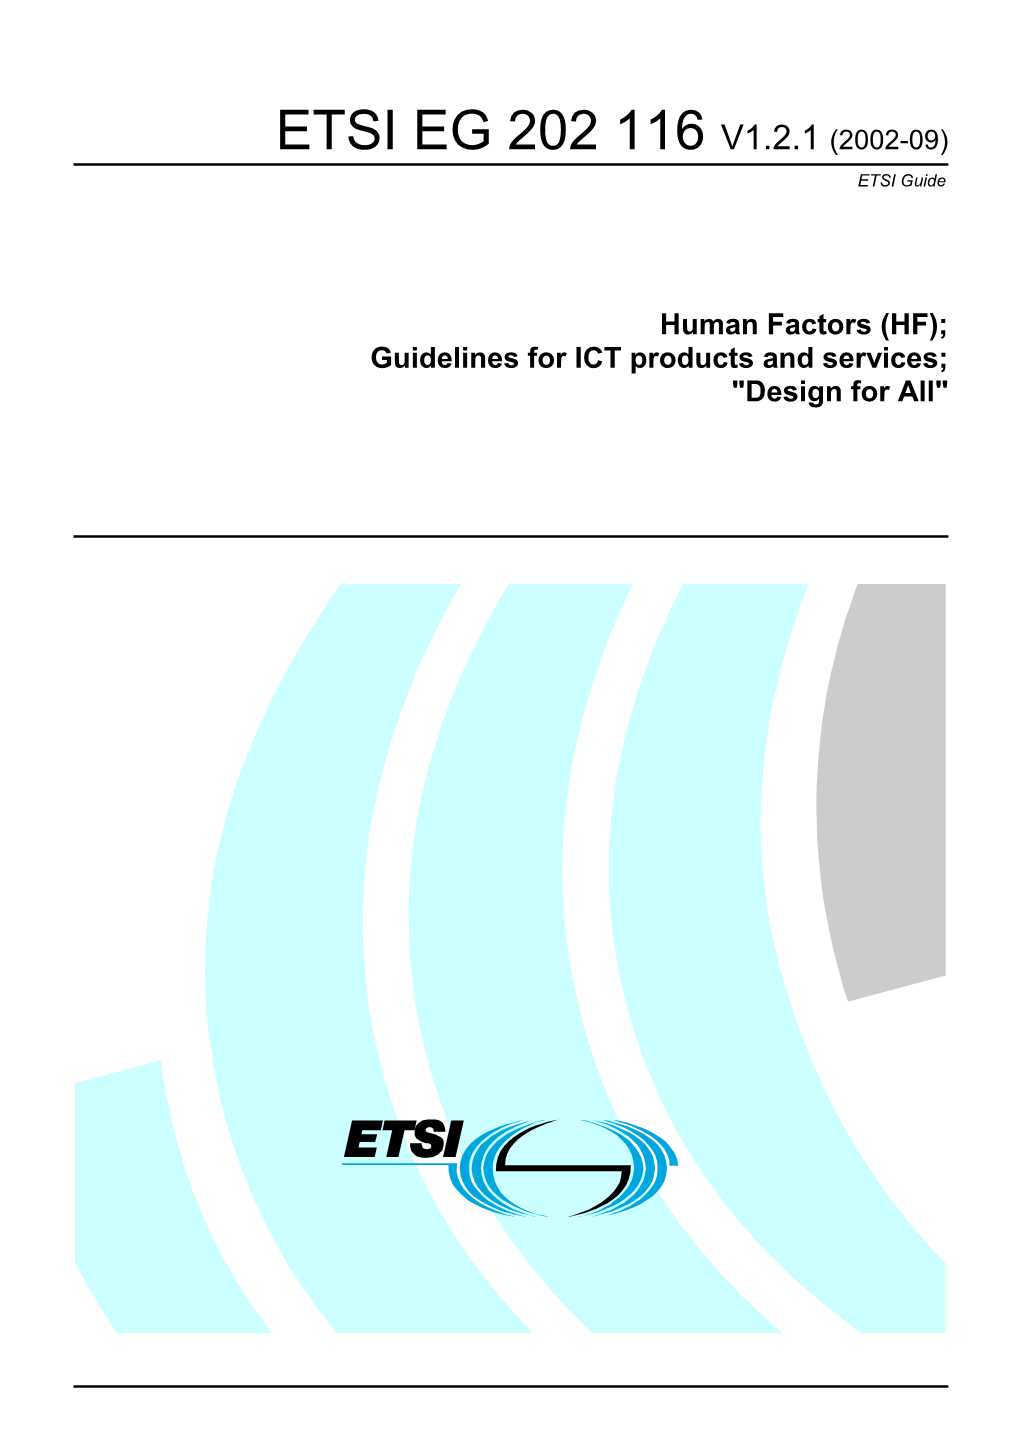 EG 202 116 V1.2.1 (2002-09) ETSI Guide